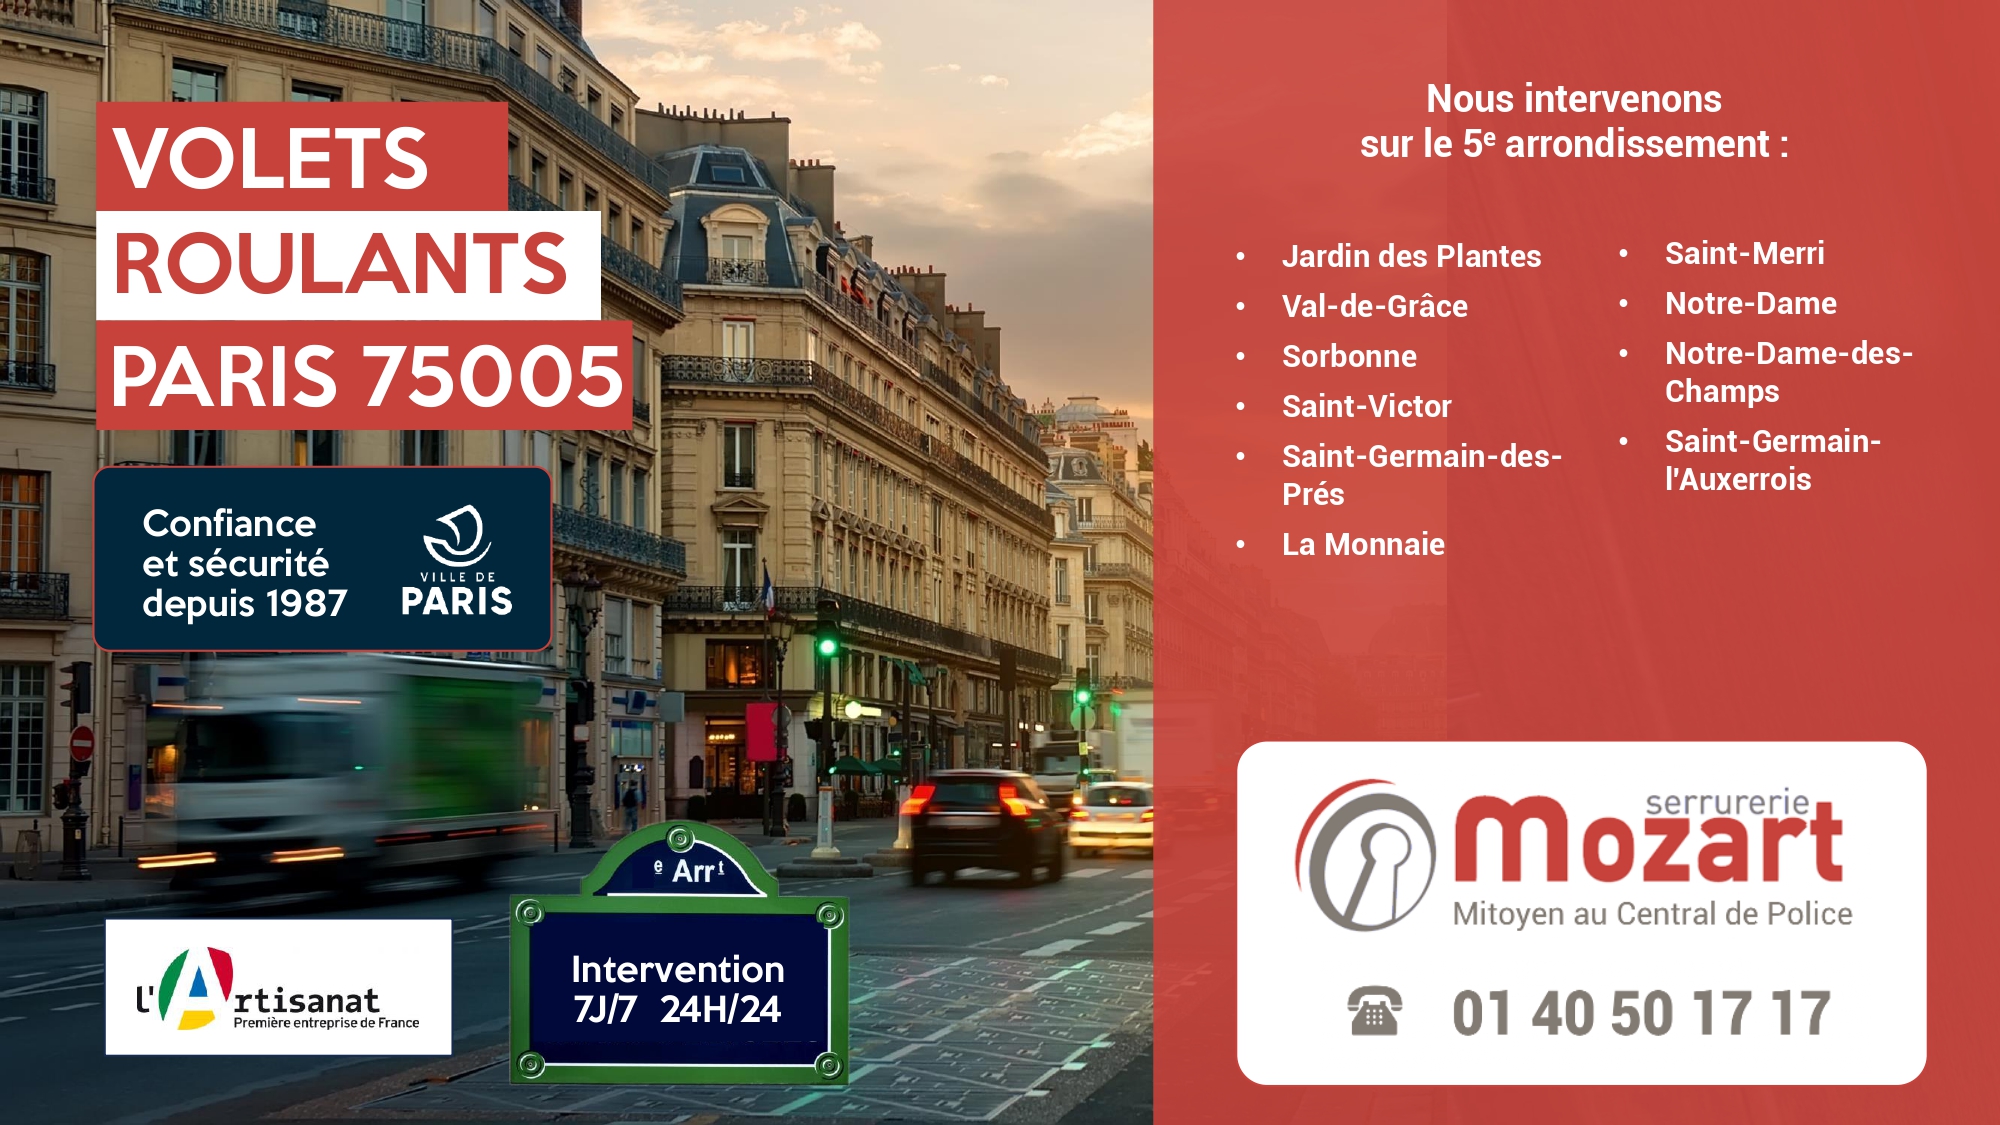 Serrurerie Mozart Volets Roulants - Quai de la Tournelle, Paris 5 - Téléphone : 01 40 50 17 17